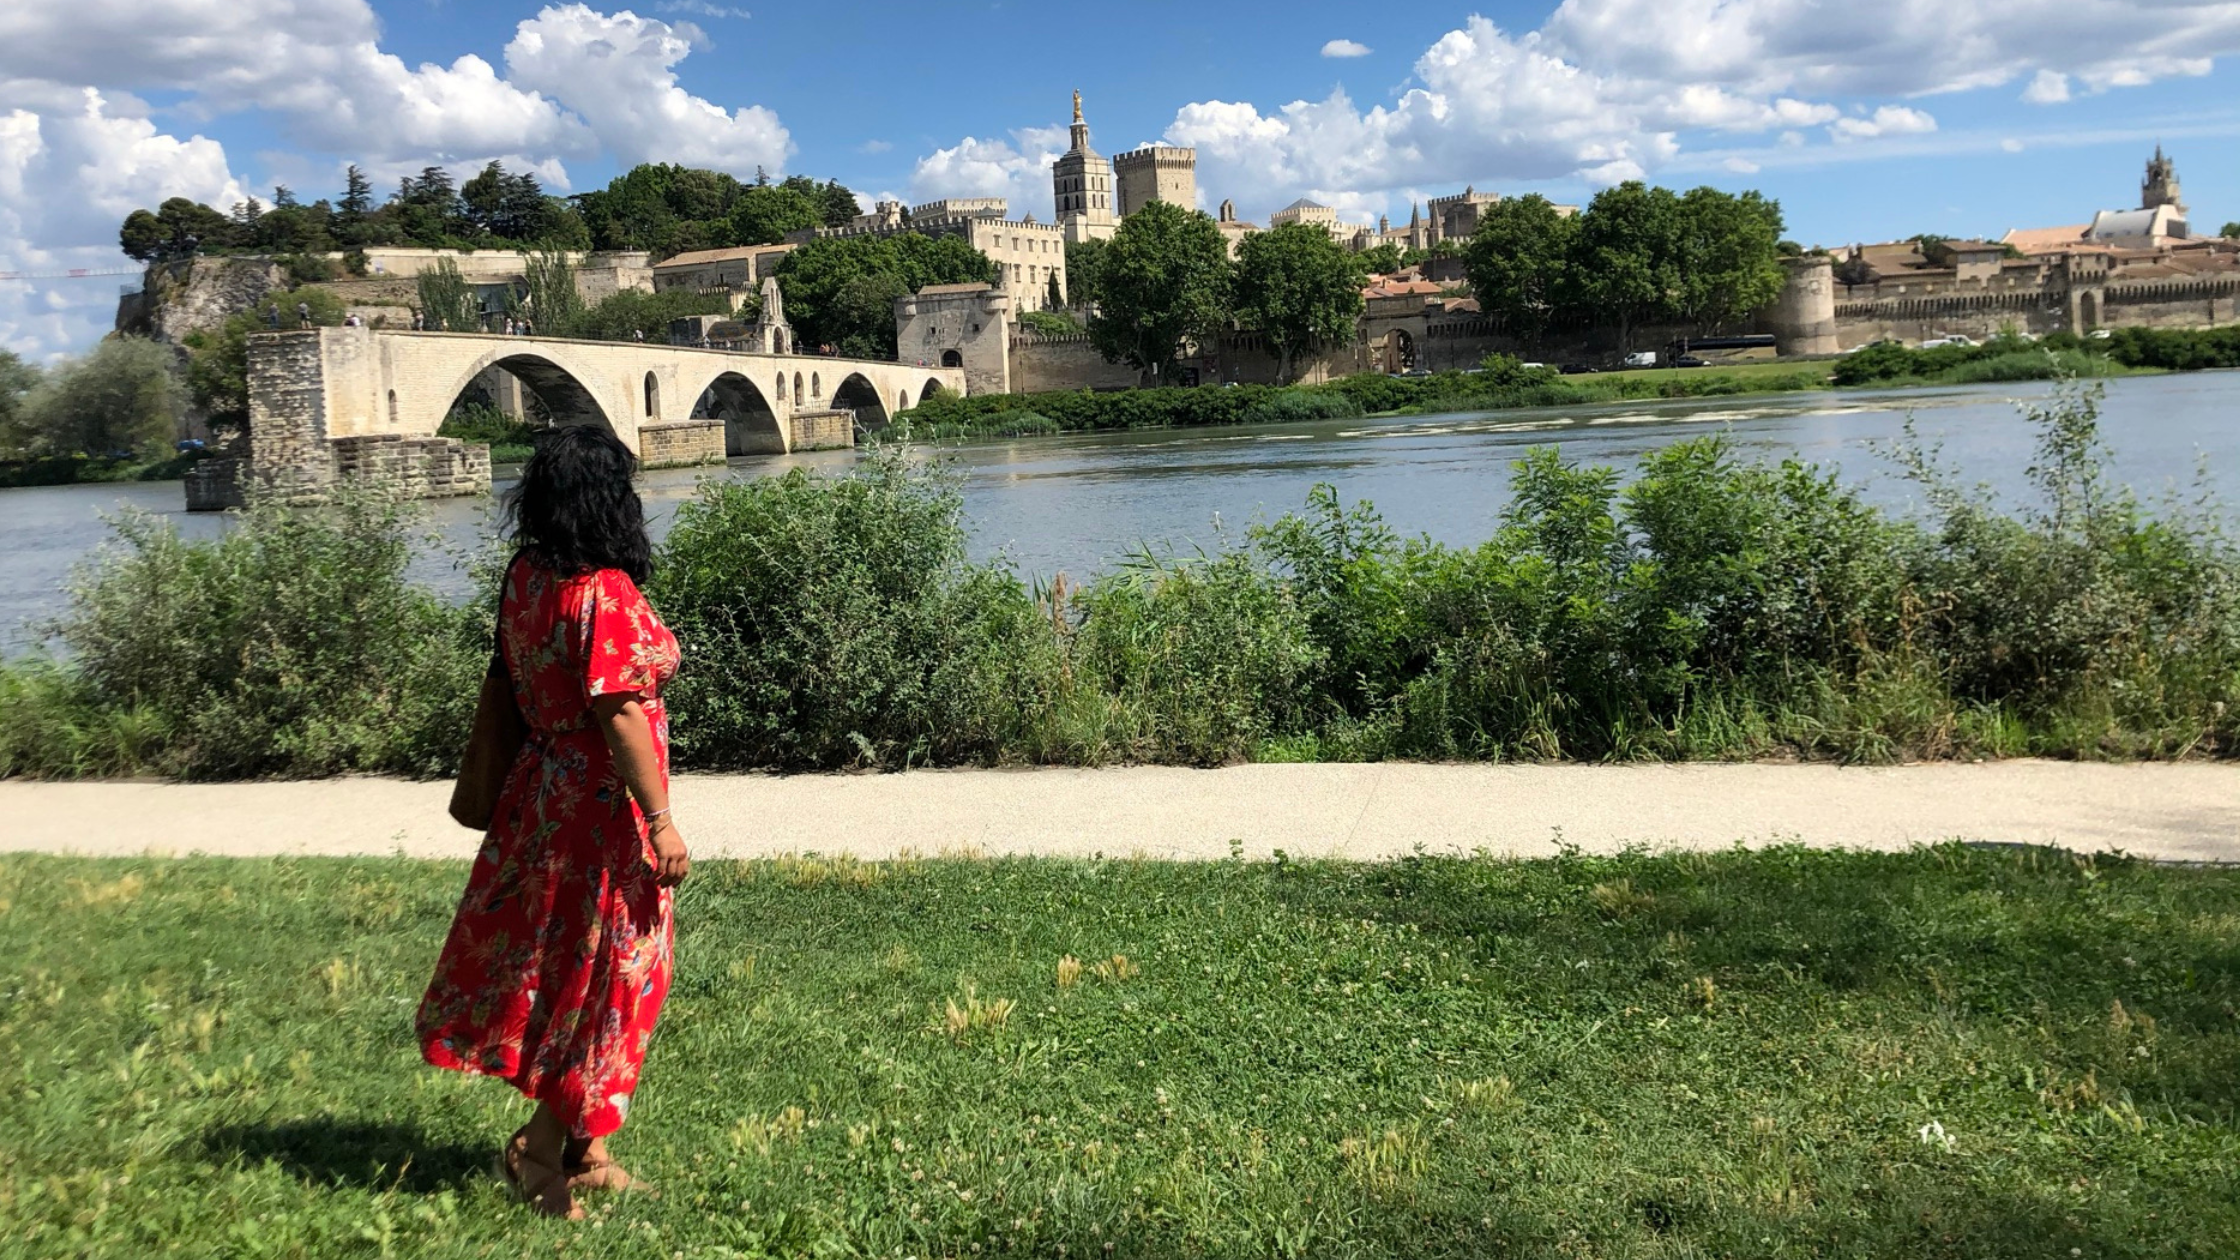 Aix-en-Provence, Avignon und Arles: 3 schöne Städte in Südfrankreich